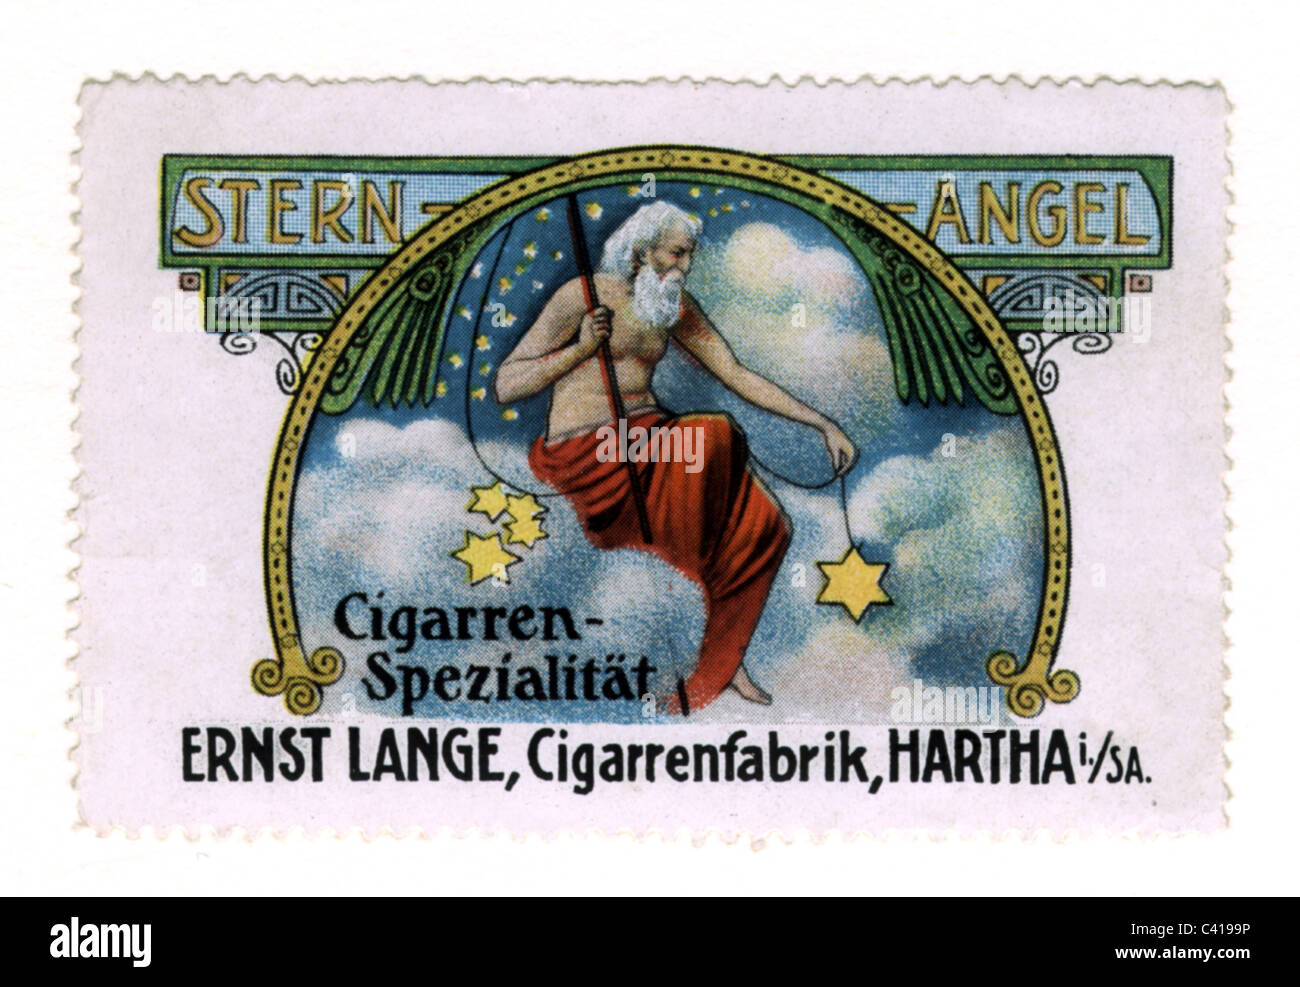 Pubblicità, tabacco, sigaro, sigari Sternangel Cigars, prodotto da Ernst Lange, Hartha/Sassonia, francobollo, circa 1910, diritti aggiuntivi-clearences-non disponibile Foto Stock